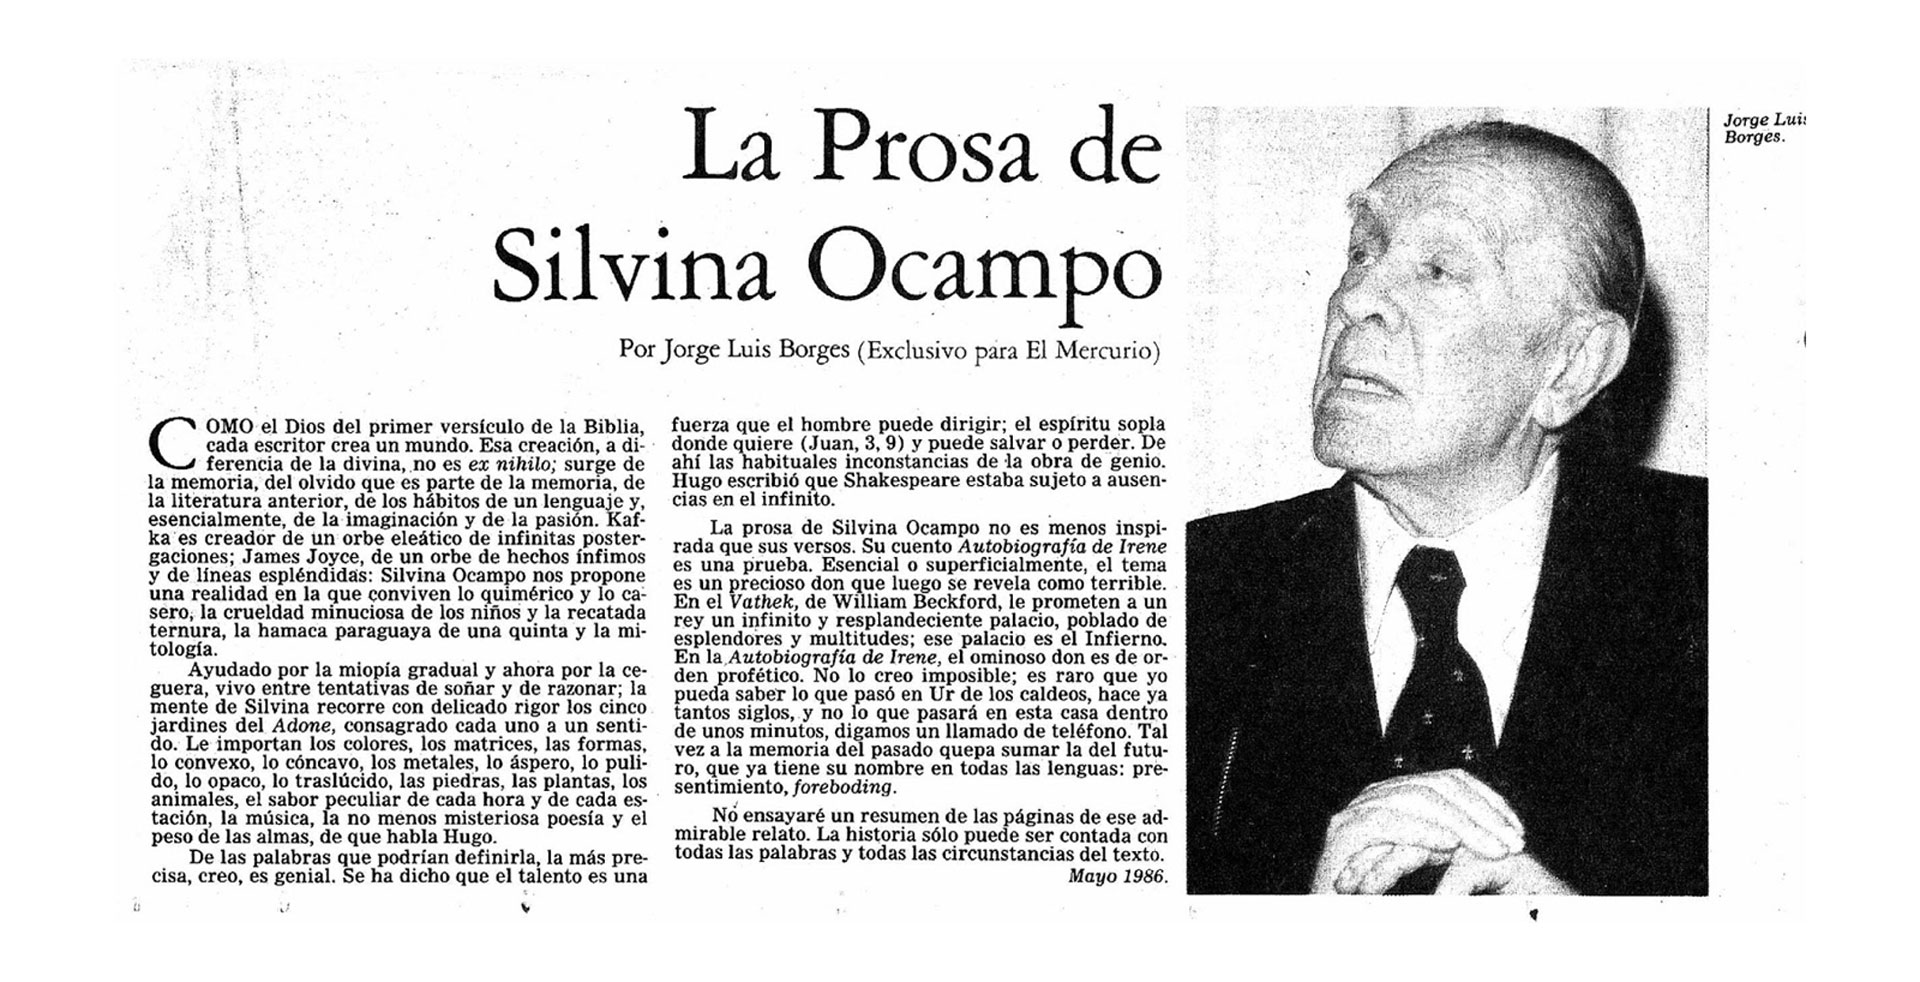 El artículo publicado por El Mercurio de Chile, donde Borges habla de la que para él era la mejor escritora argentina contemporánea: Silvina Ocampo.